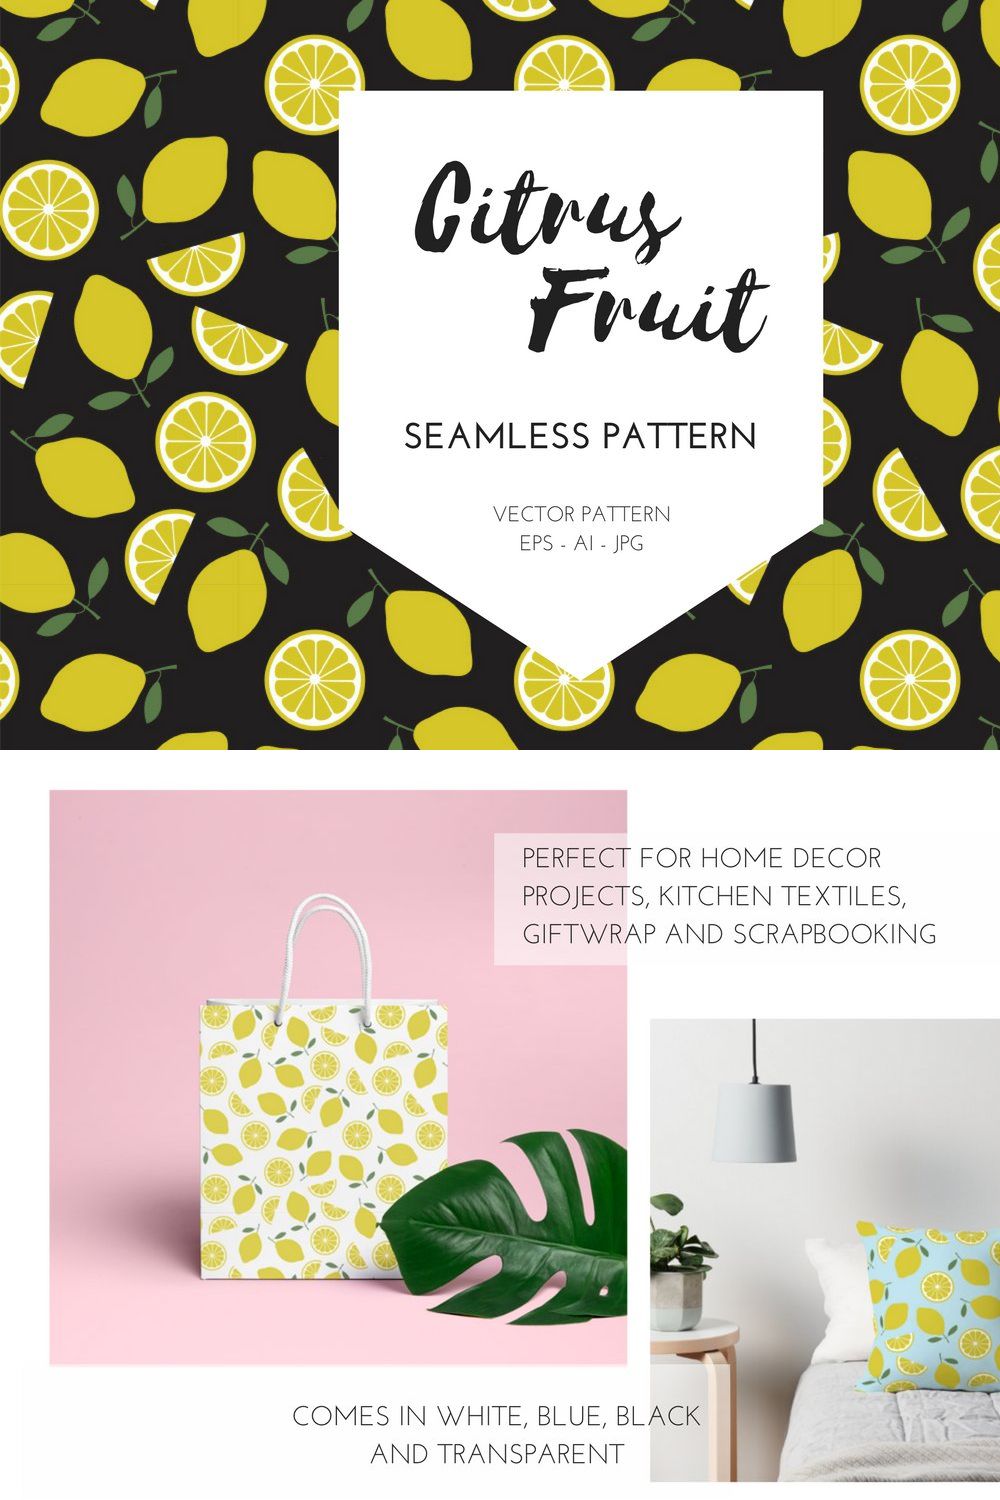 Citrus Fruit Pattern pinterest preview image.